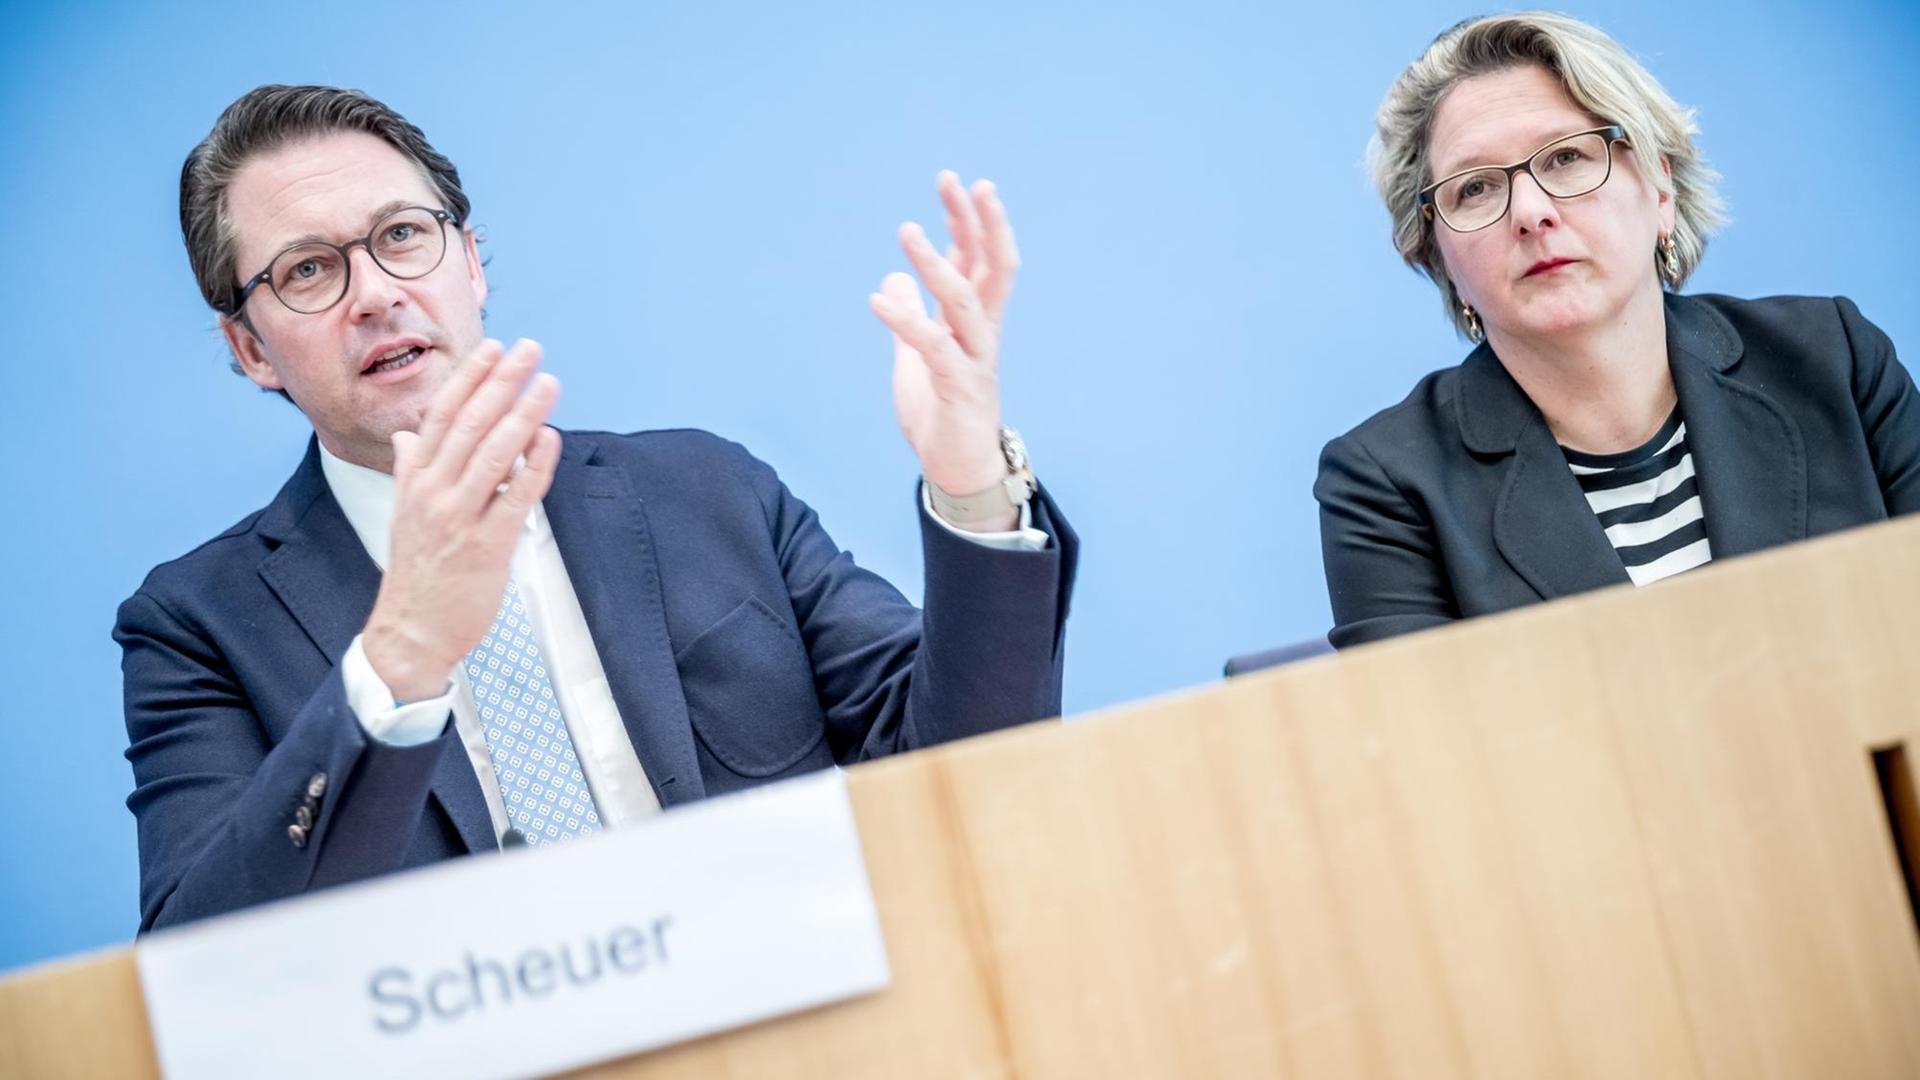 02.10.2018, Berlin: Andreas Scheuer (CSU), Bundesminister für Verkehr und digitale Infrastruktur, spricht neben Svenja Schulze (SPD), Bundesumweltministerin, bei einer Pressekonferenz zum Dieselkonzept der Koalition